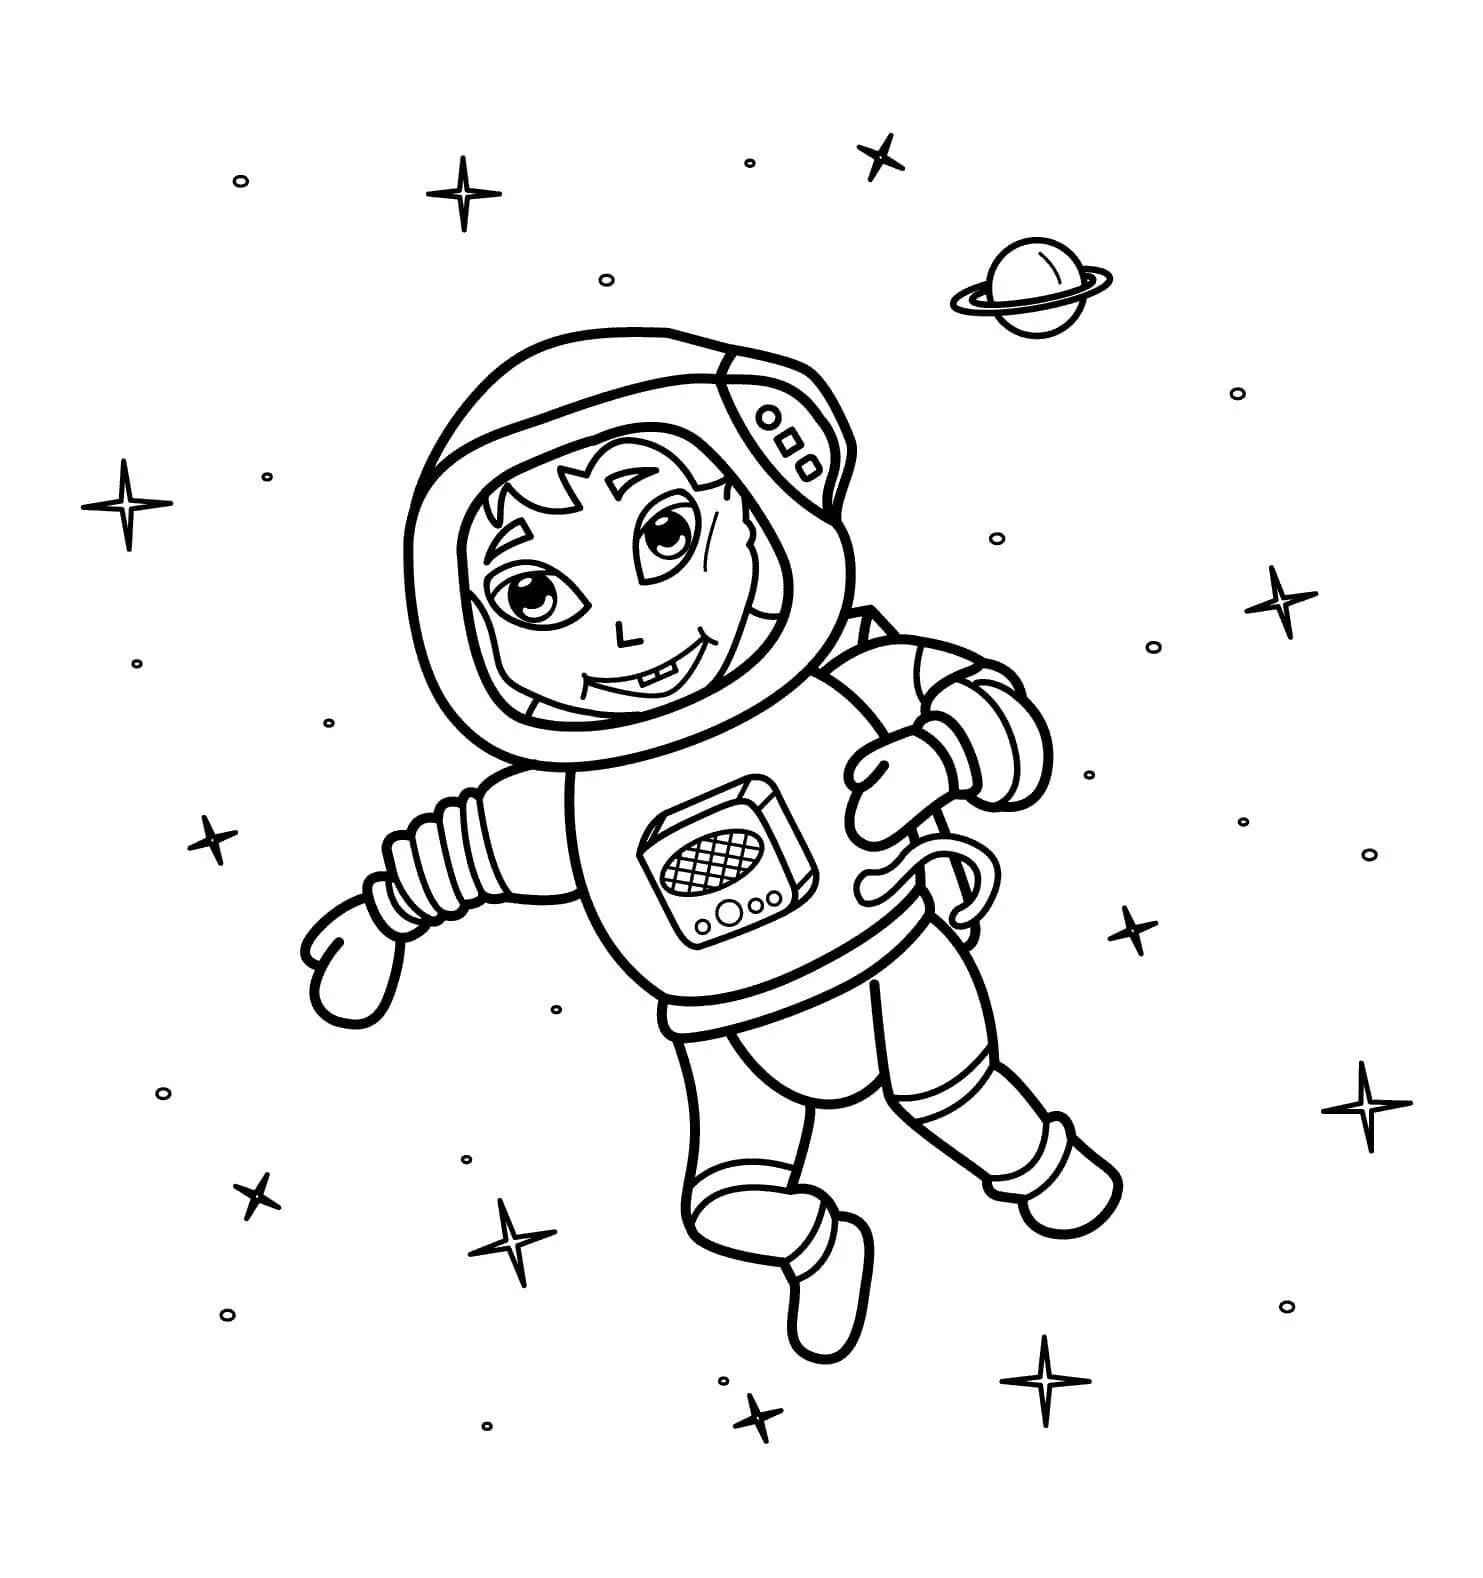 Космонавт раскраска для детей. Космос раскраска для детей. Раскраска про космос и Космонавтов для детей. Космонавт для раскрашивания для детей. Космонавт раскраска для детей 4 5 лет